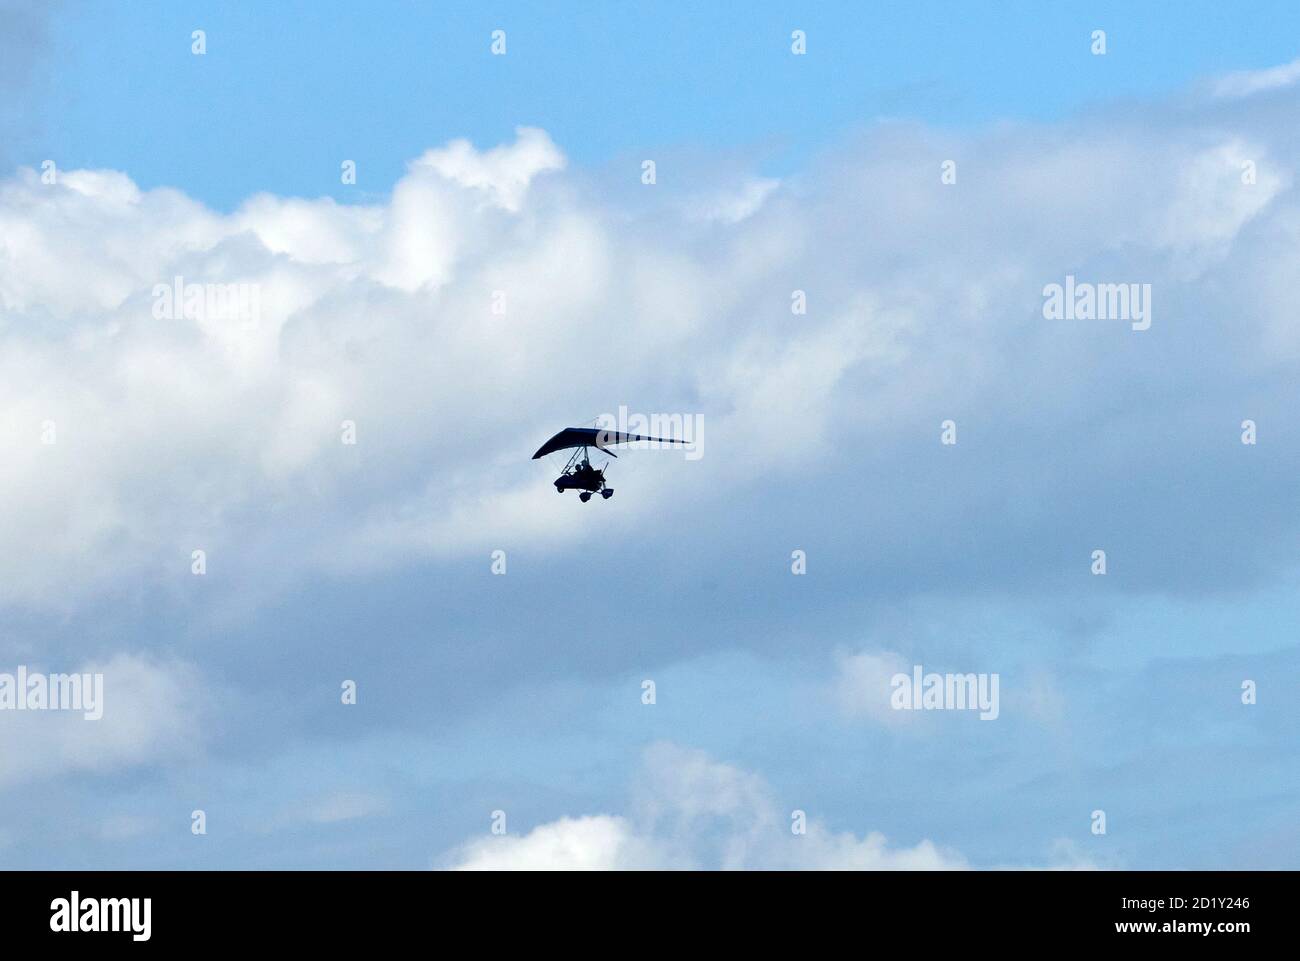 Velivolo Microlite silhouette contro il cielo, Regno Unito Foto Stock